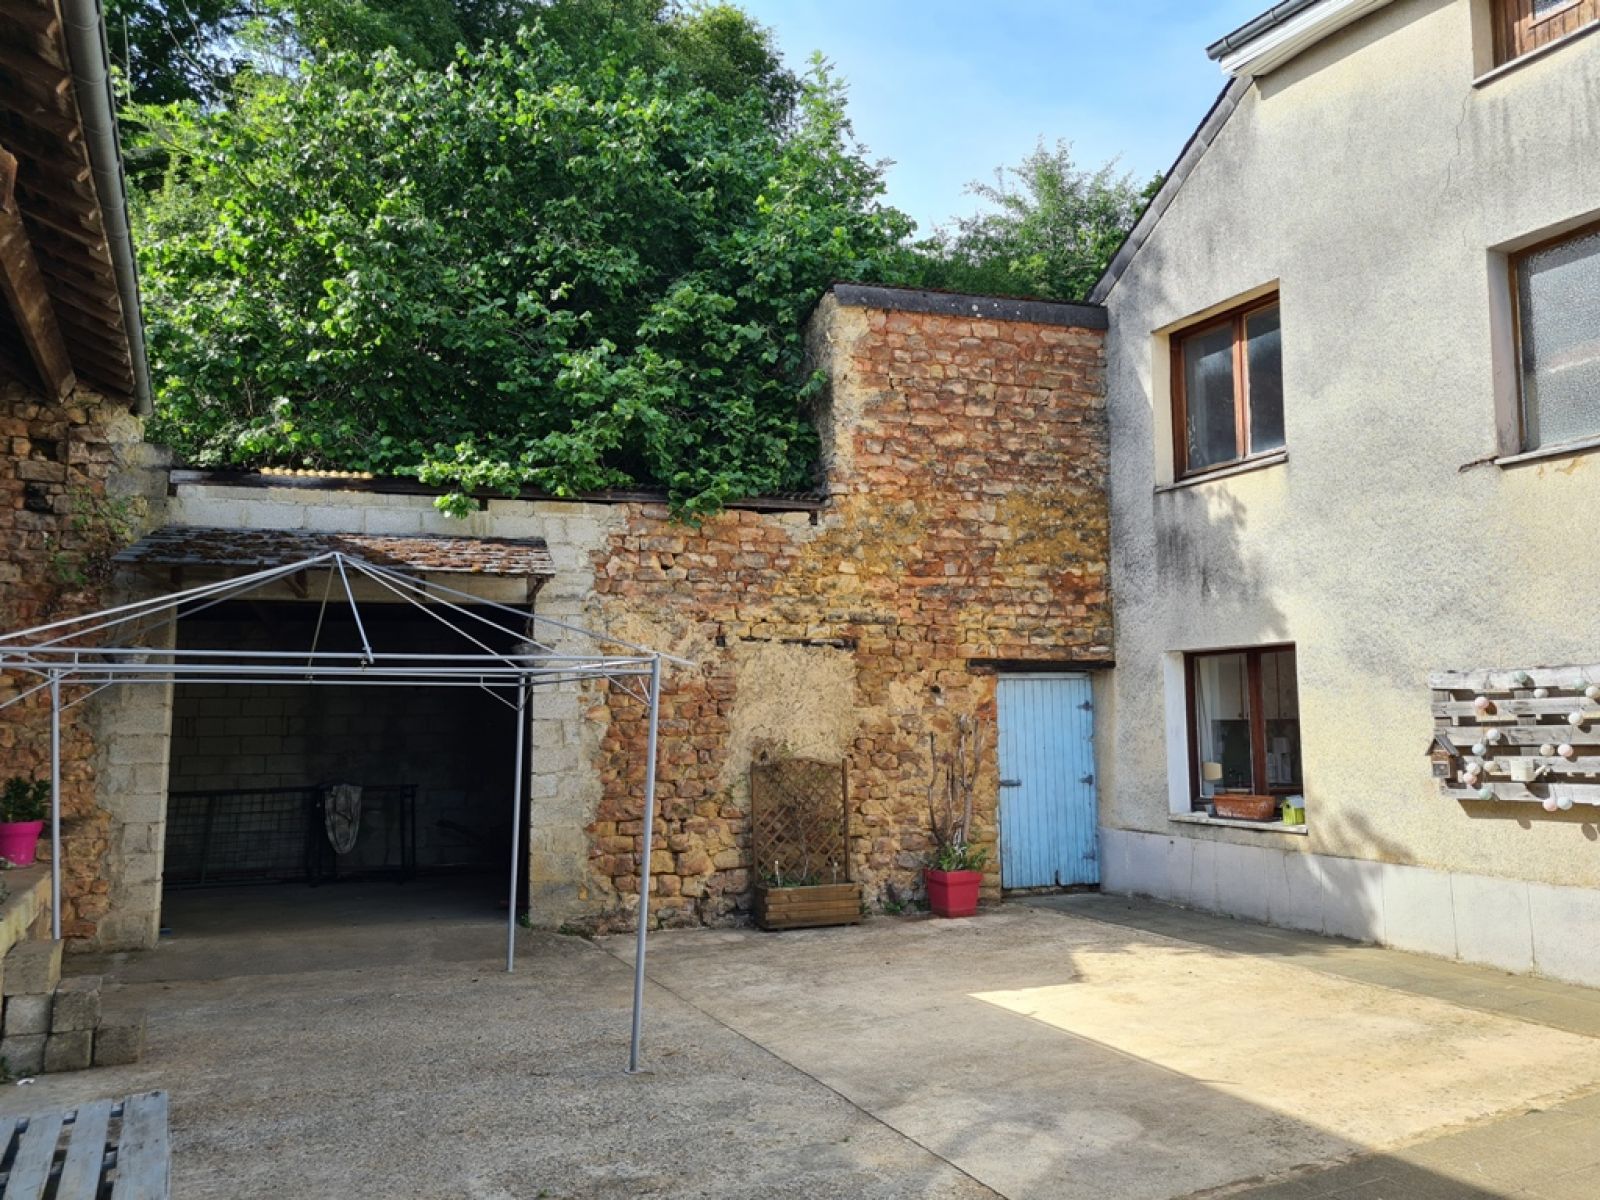 A VENDRE - Villers-devant-Orval - Sympathique maison villageoise - Sudimmo